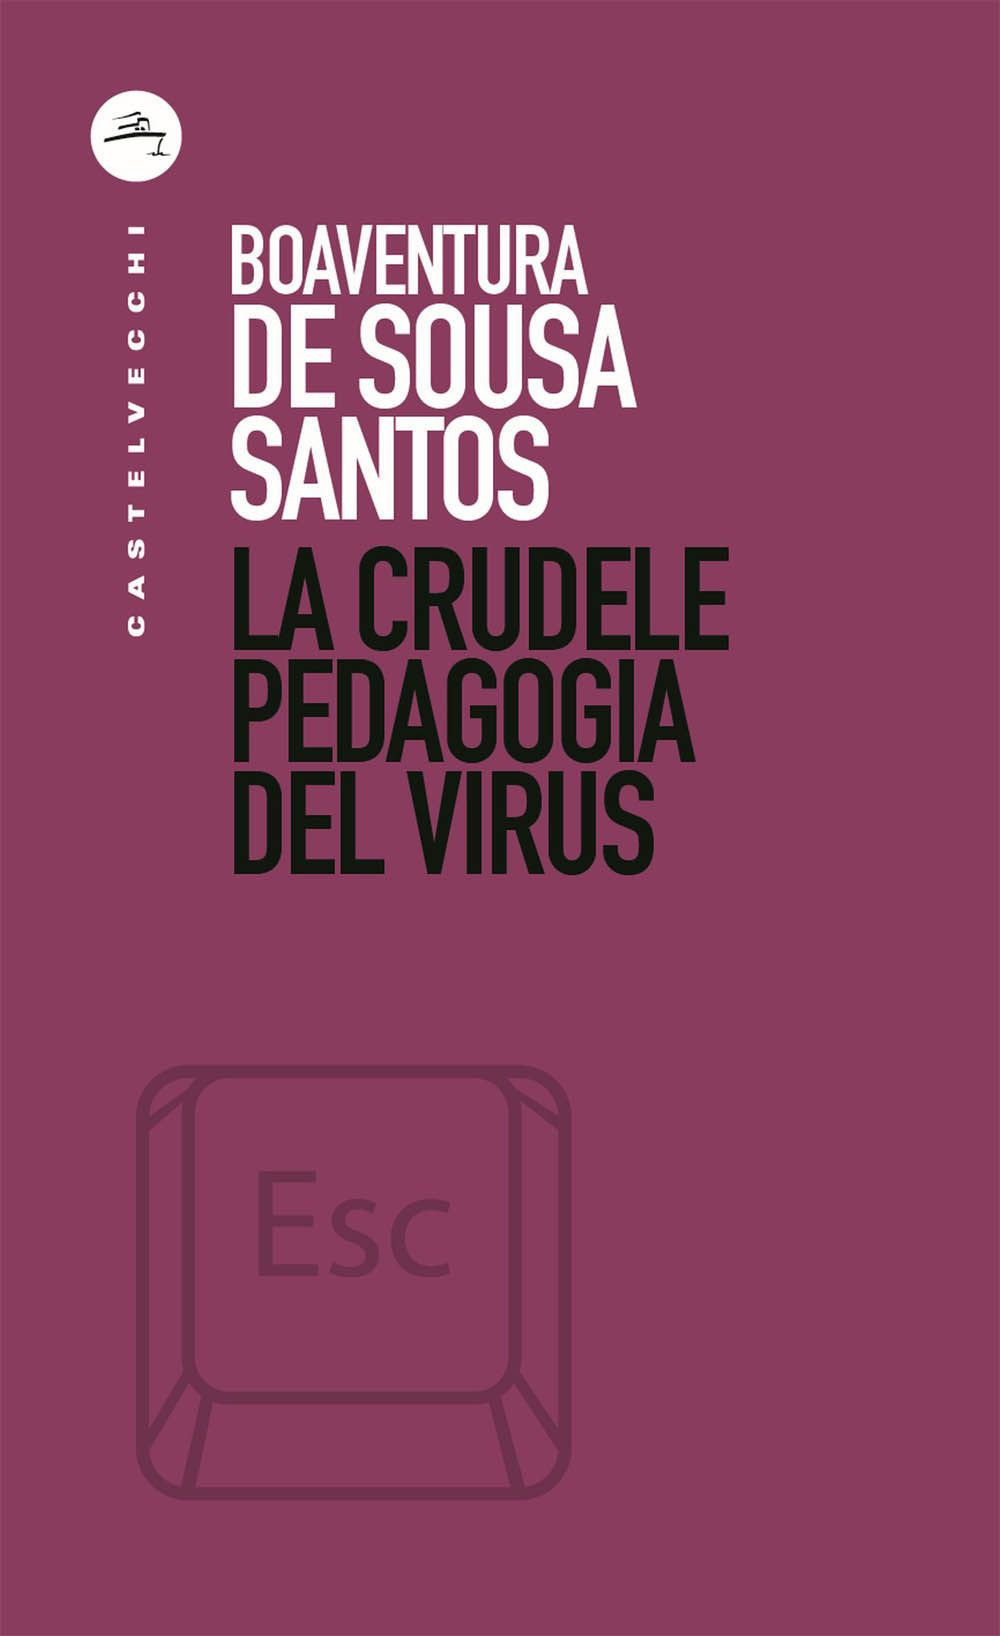 Image of La crudele pedagogia del virus